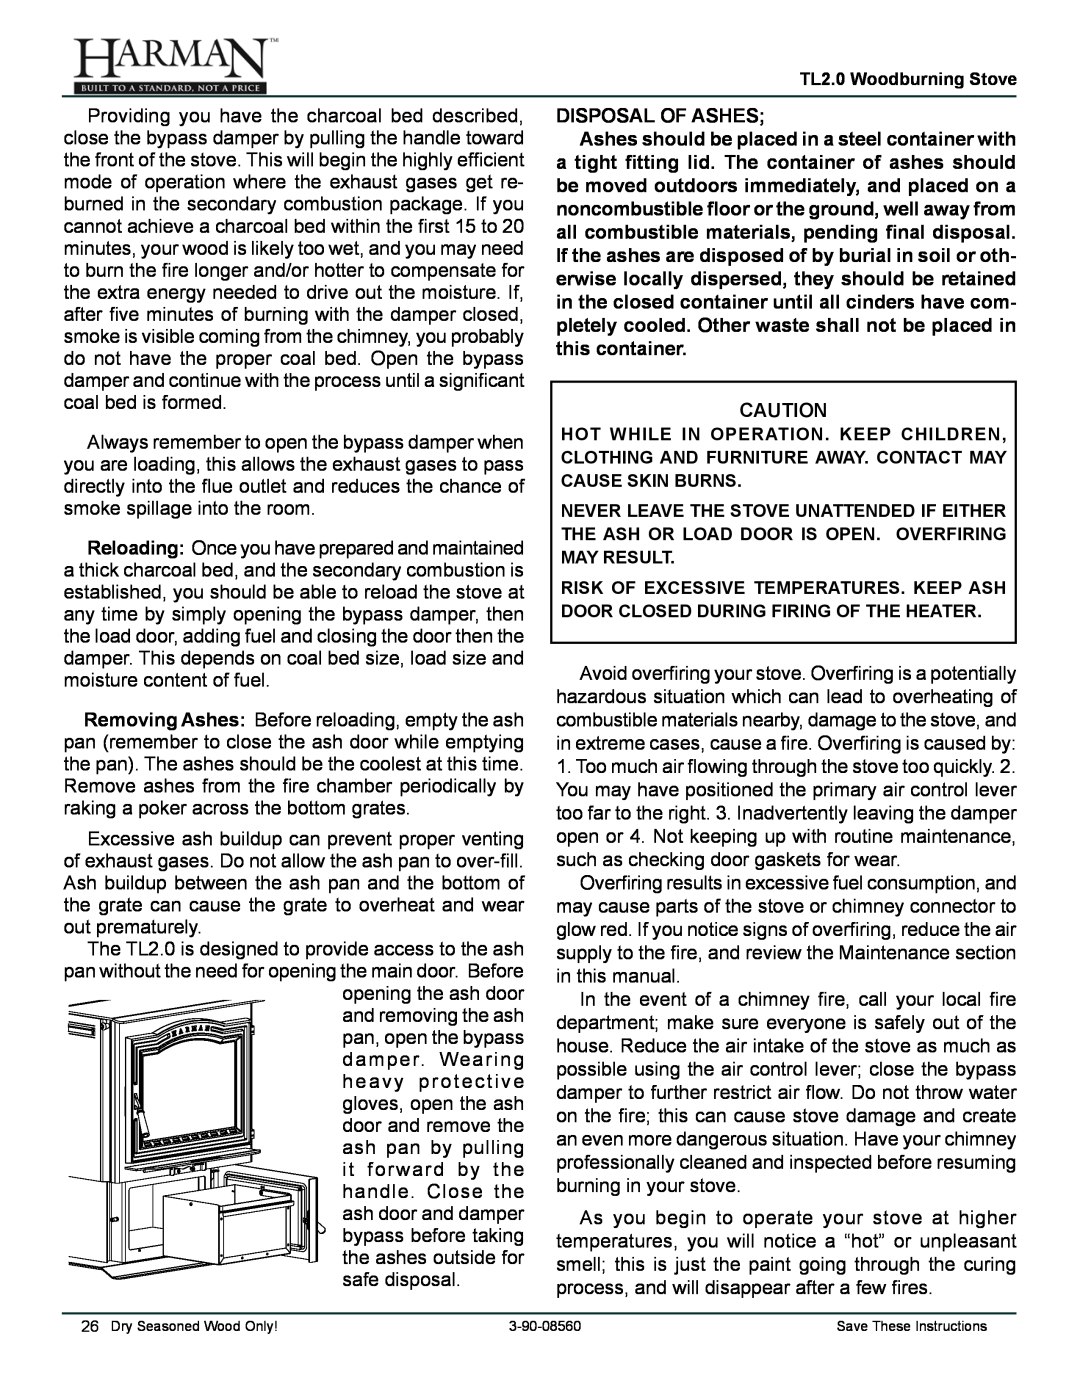 Harman Stove Company TL2.0 manual Disposal Of Ashes 